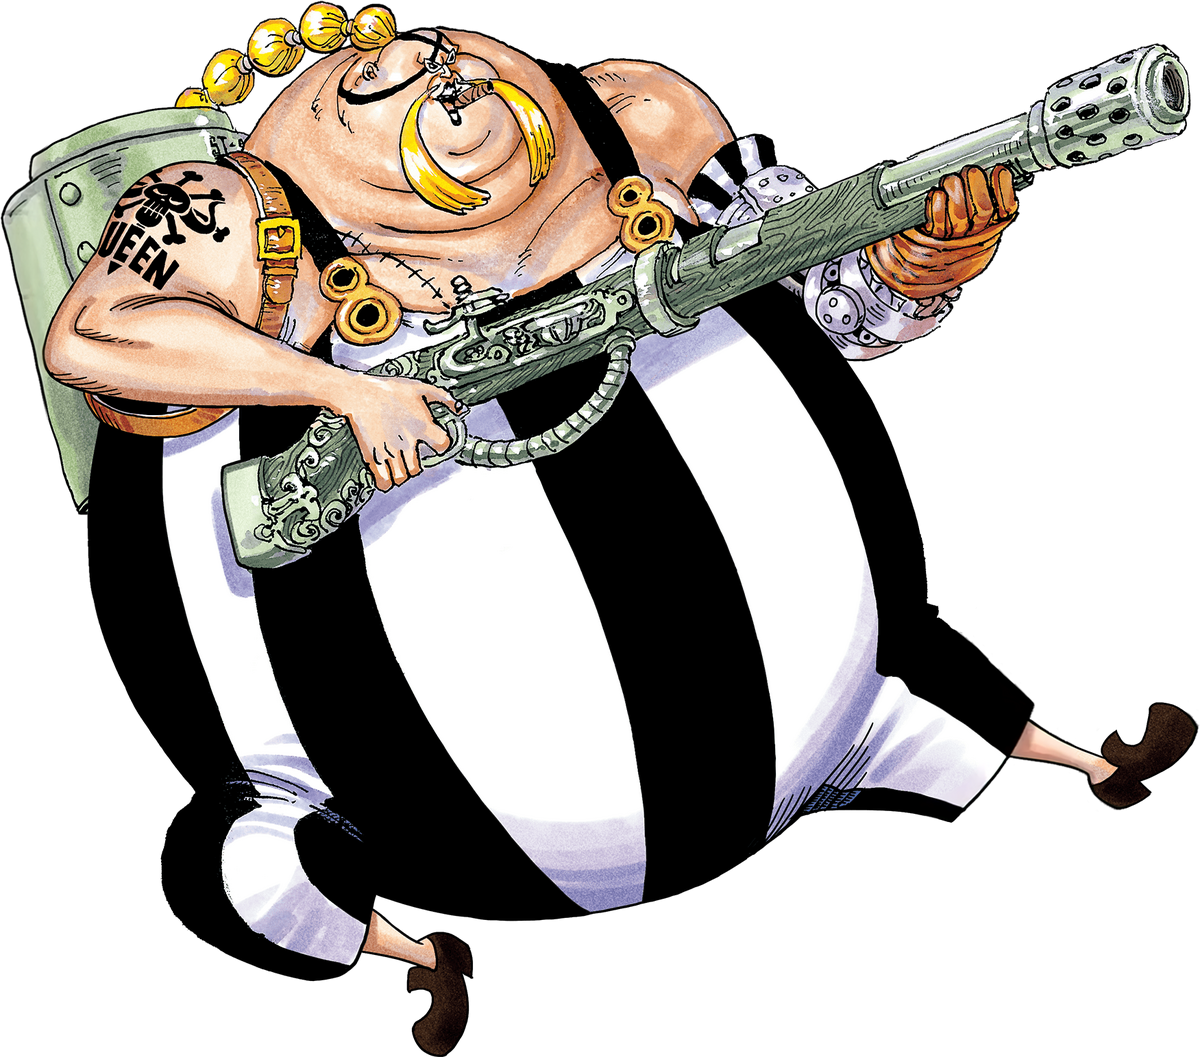 One Piece Wiki, Fandom